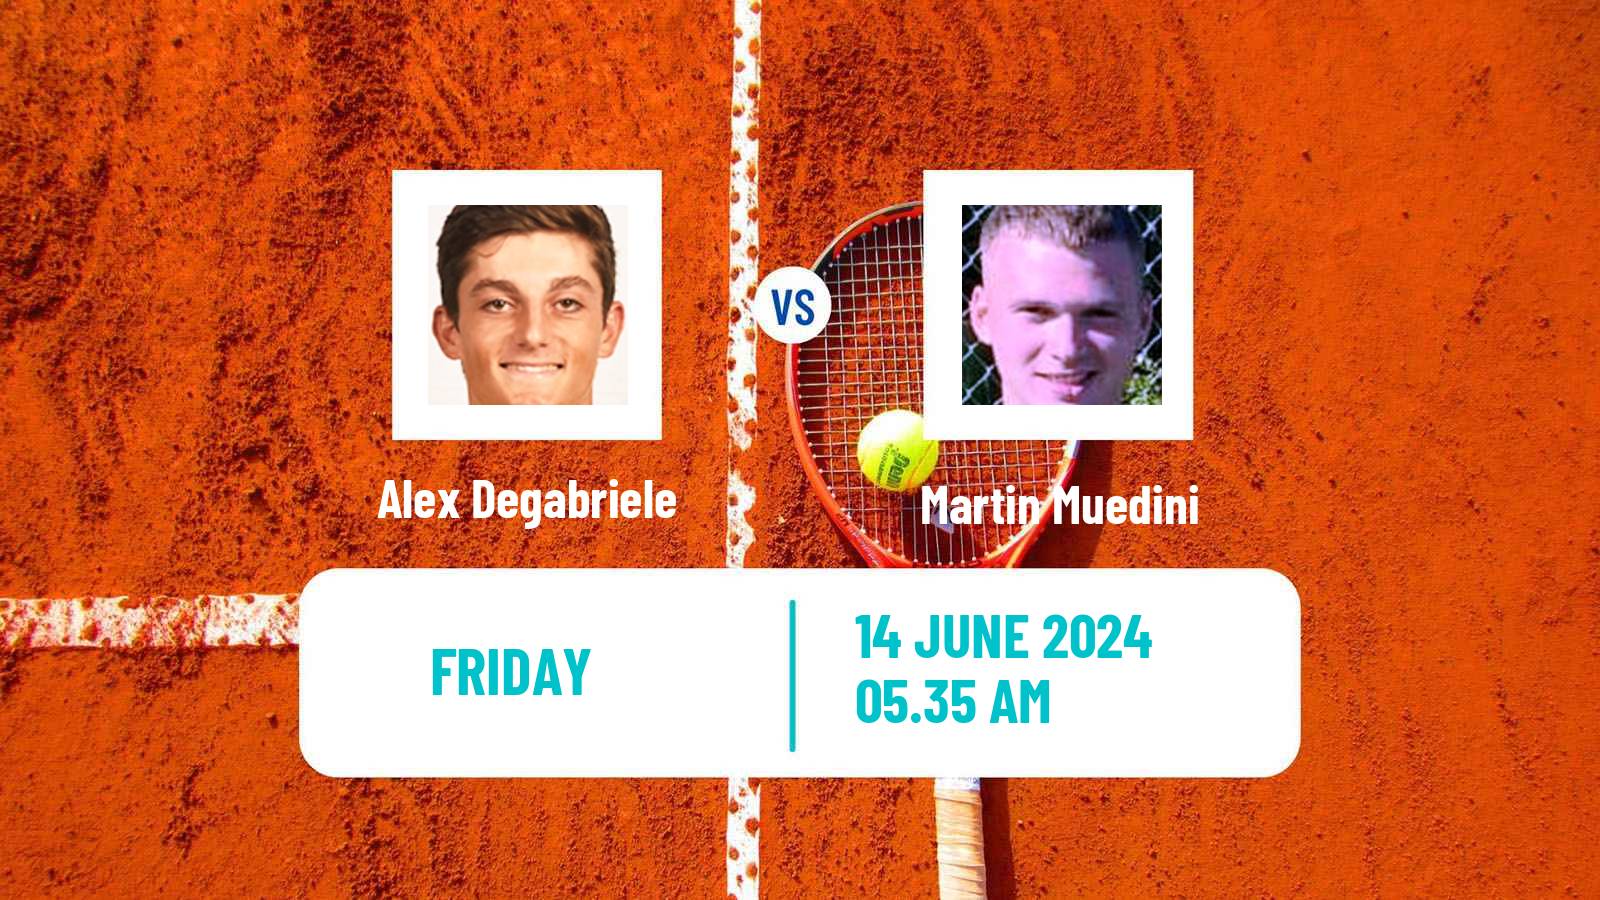 Tennis Davis Cup Group IV Alex Degabriele - Martin Muedini